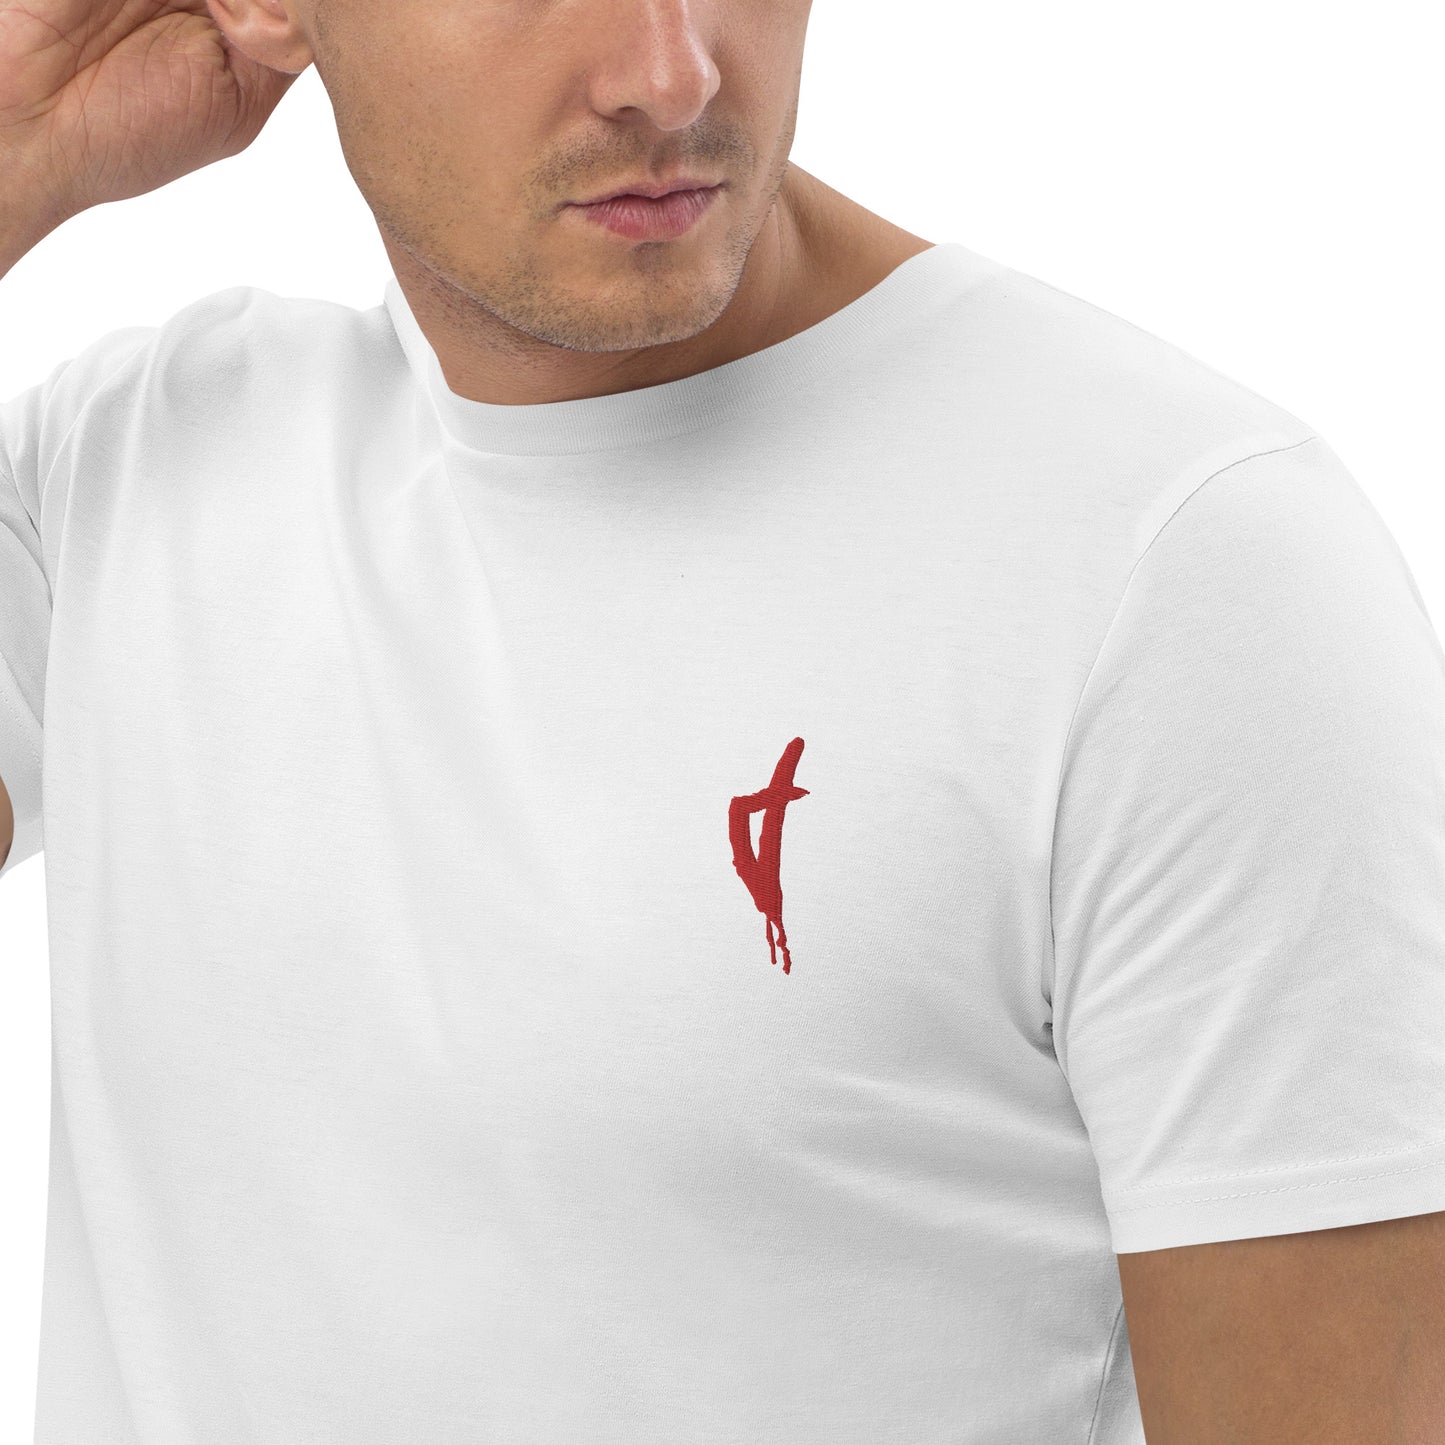 T-shirt unisexe en coton bio Corse Rouge - Ochju Ochju Blanc / S Ochju T-shirt unisexe en coton bio Corse Rouge